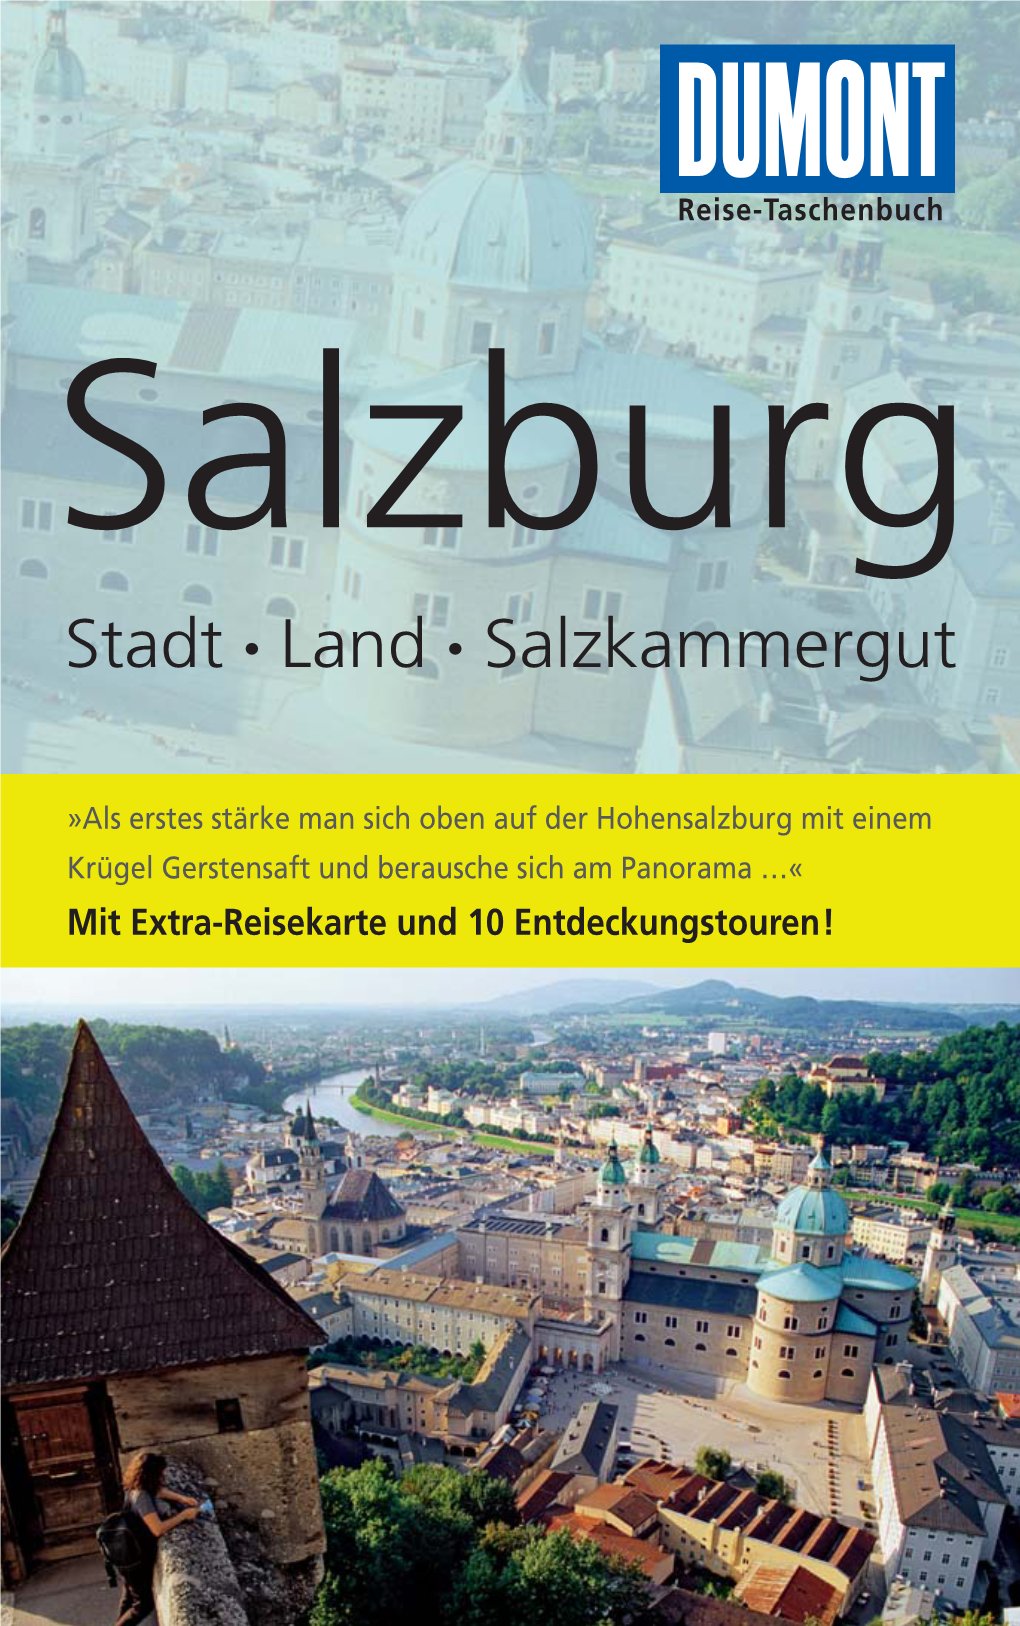 Stadt • Land • Salzkammergut